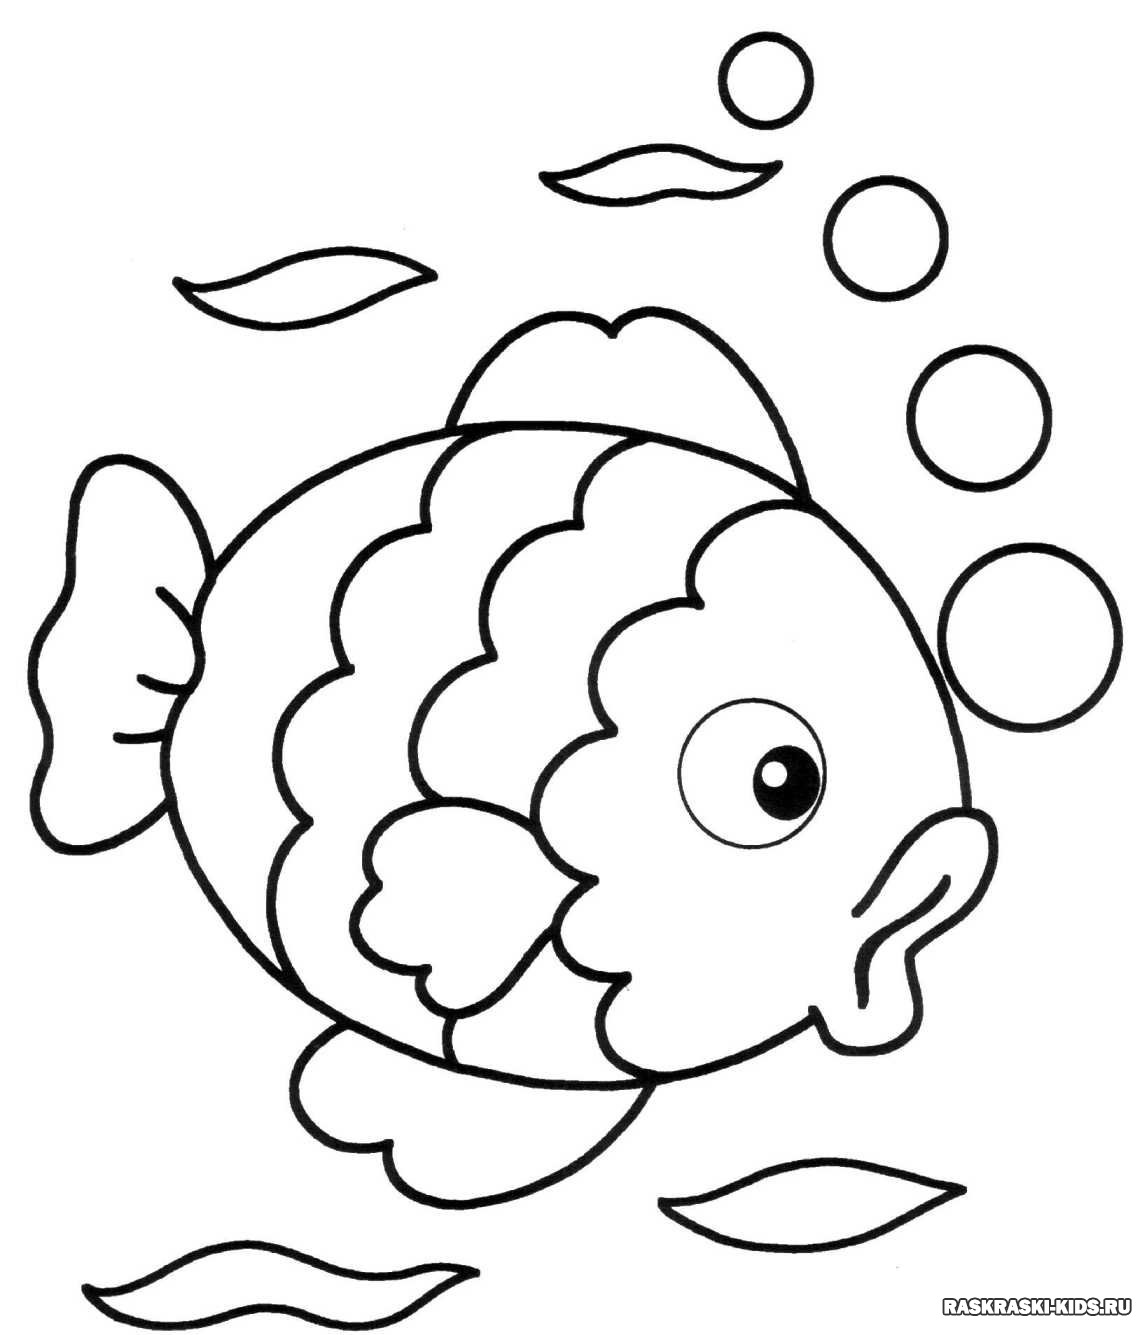 Раскраска рыбка для детей 3-4 лет